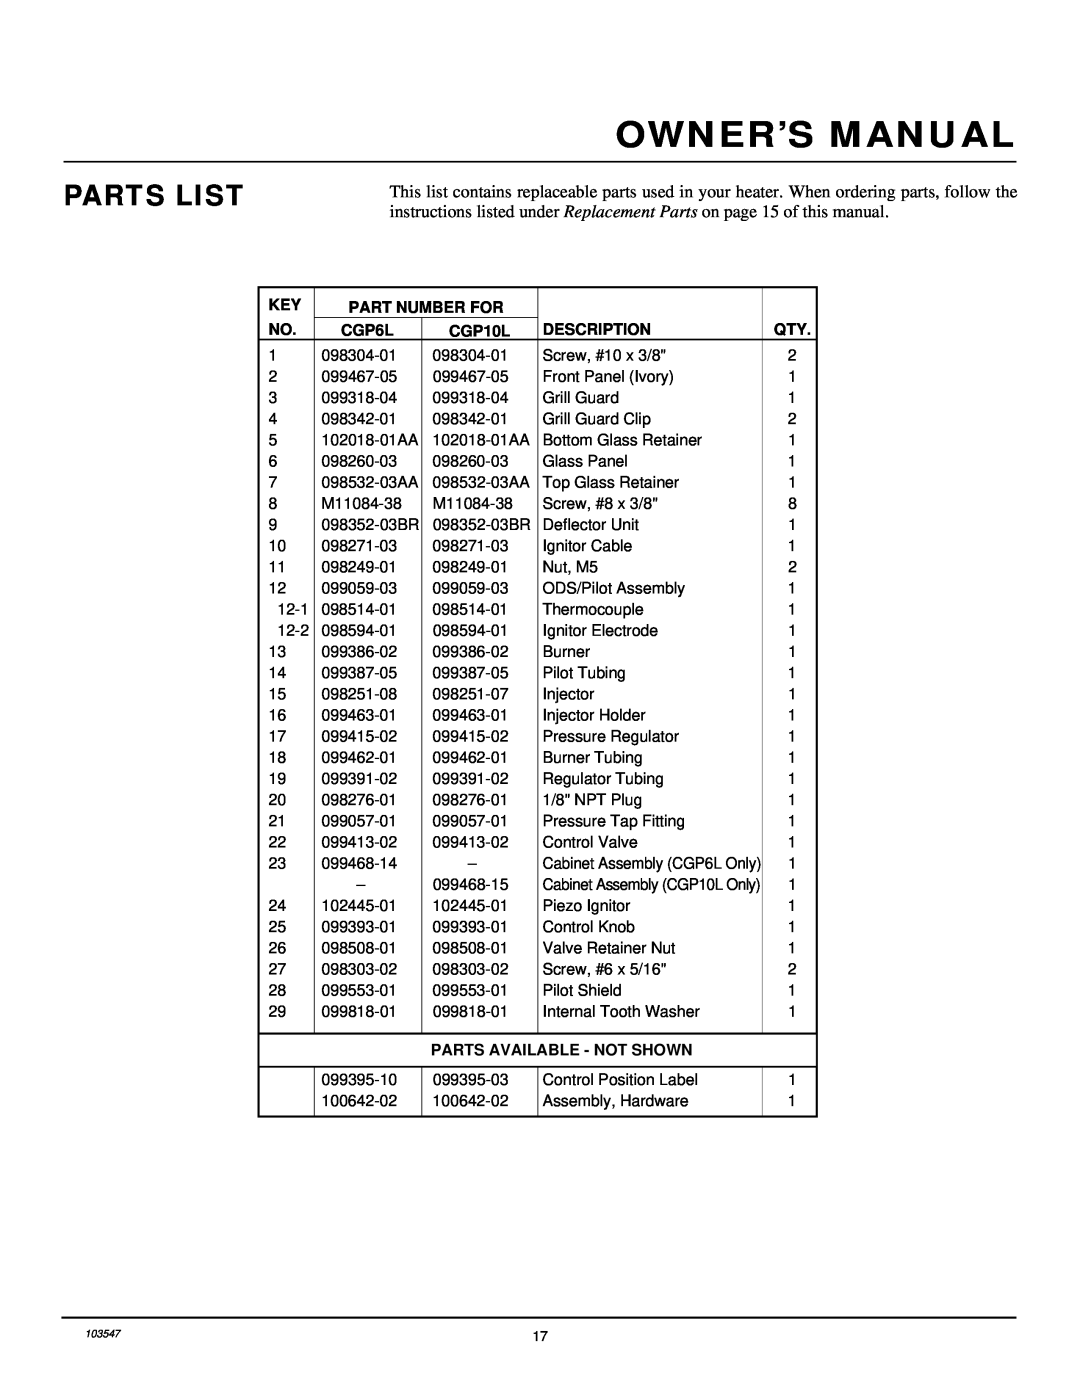 Desa CGP10L installation manual Parts List, Part Number For, CGP6L, Description, Parts Available - Not Shown 